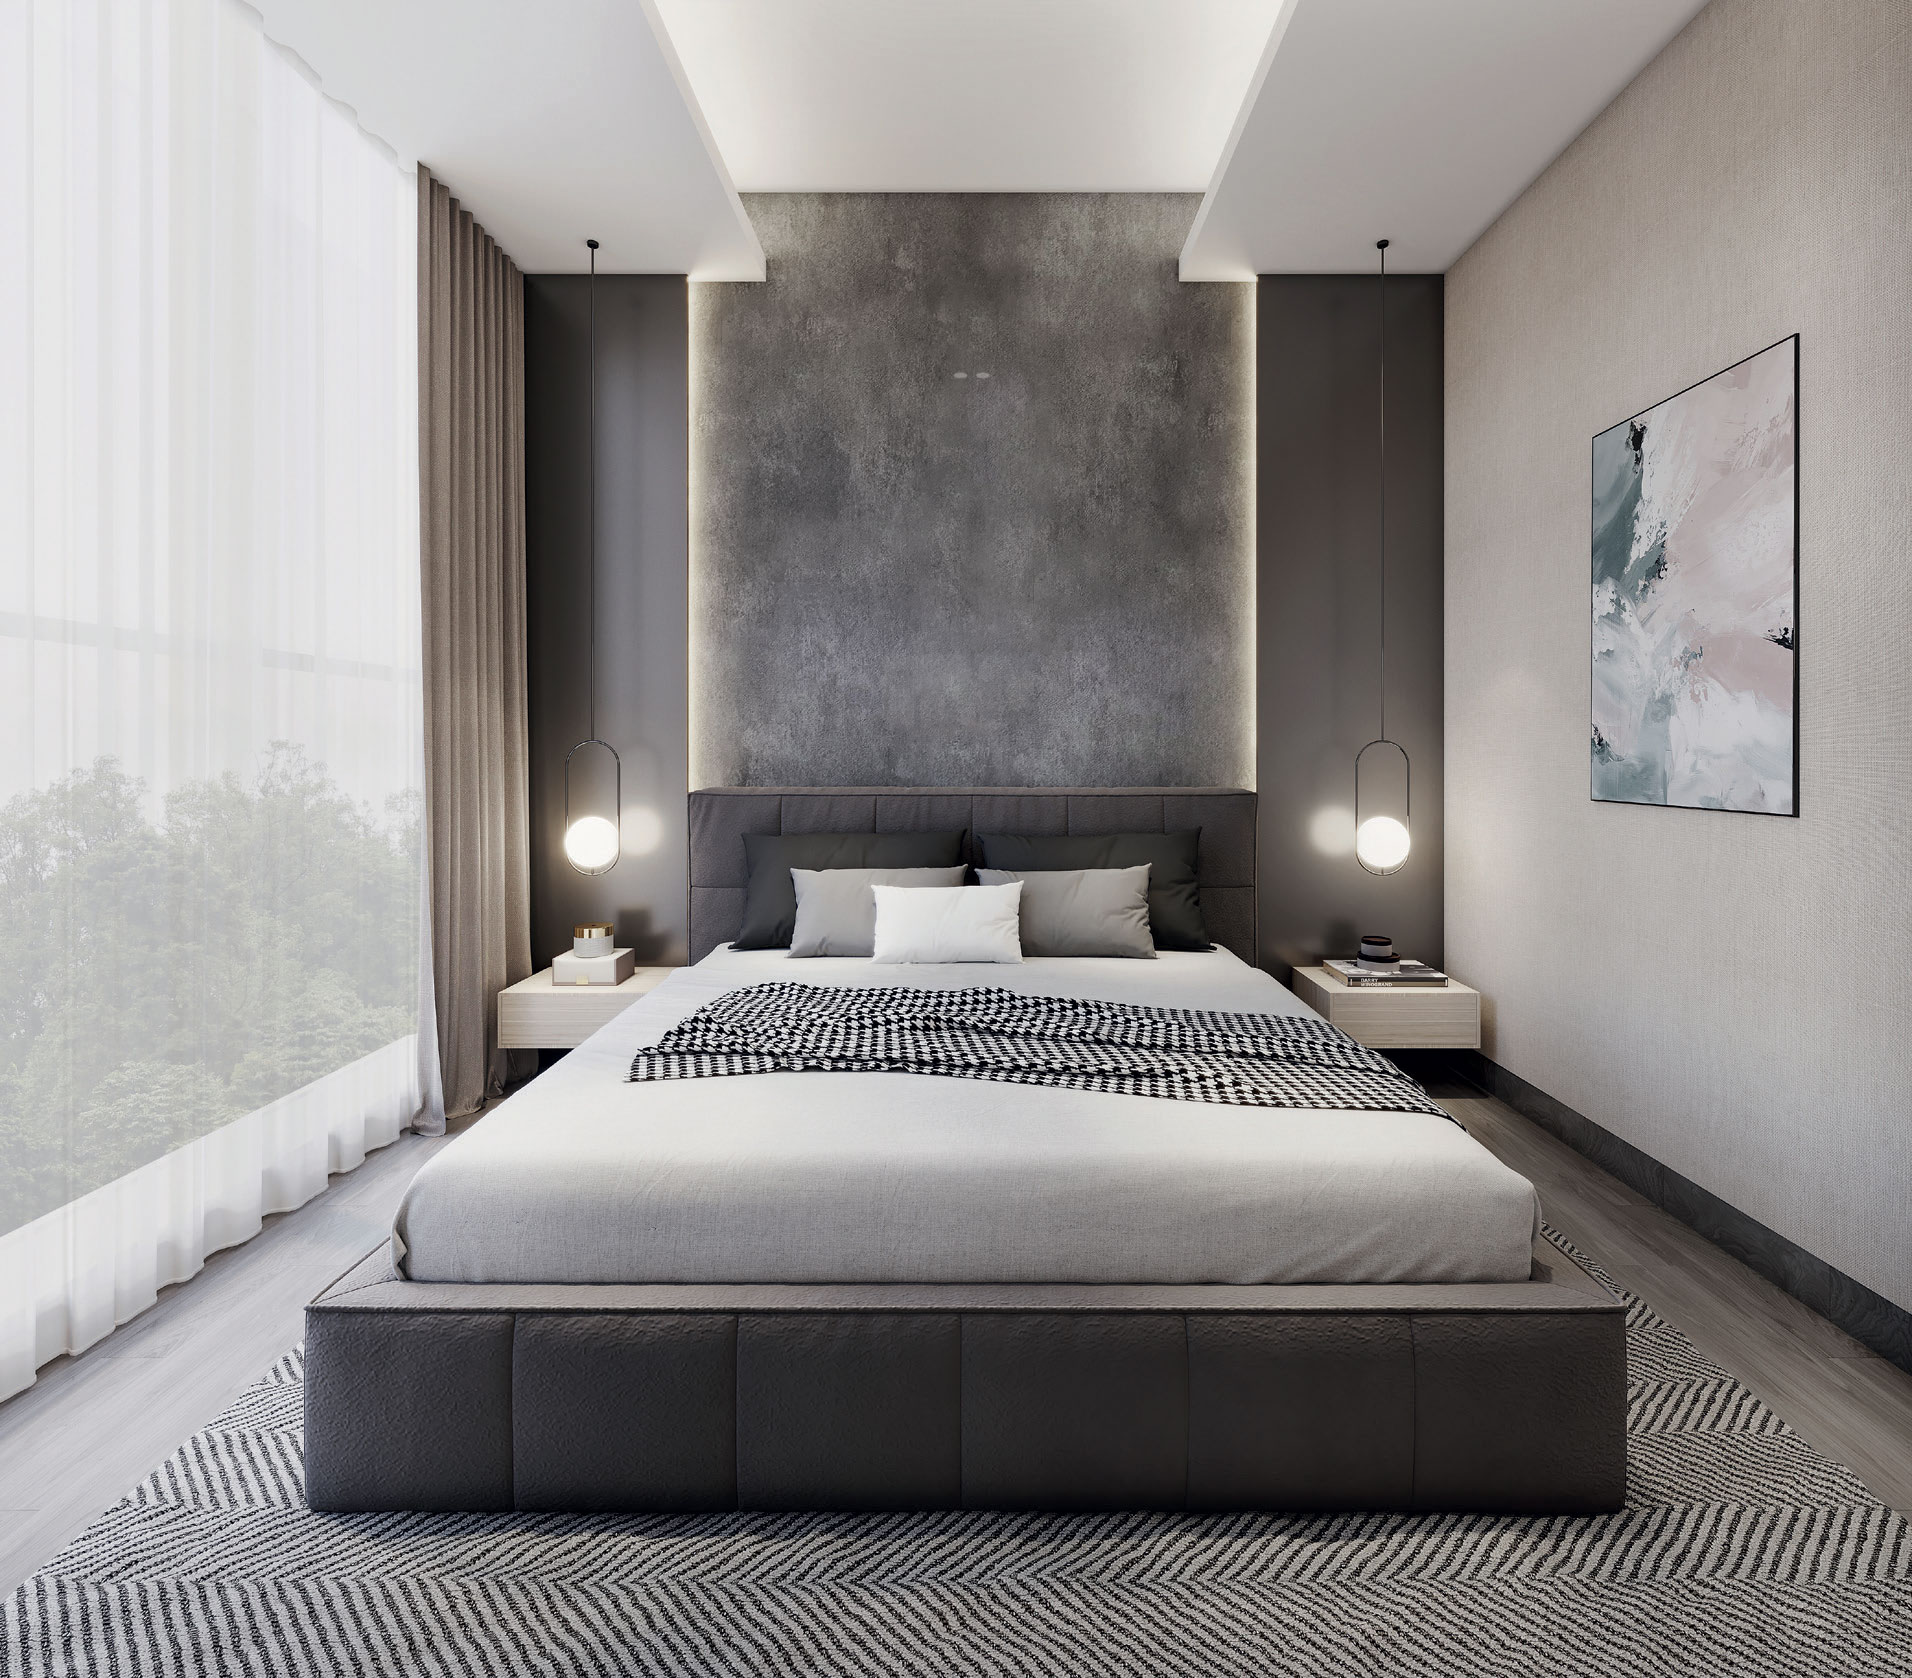 Zyanya: Bedroom Interior Design